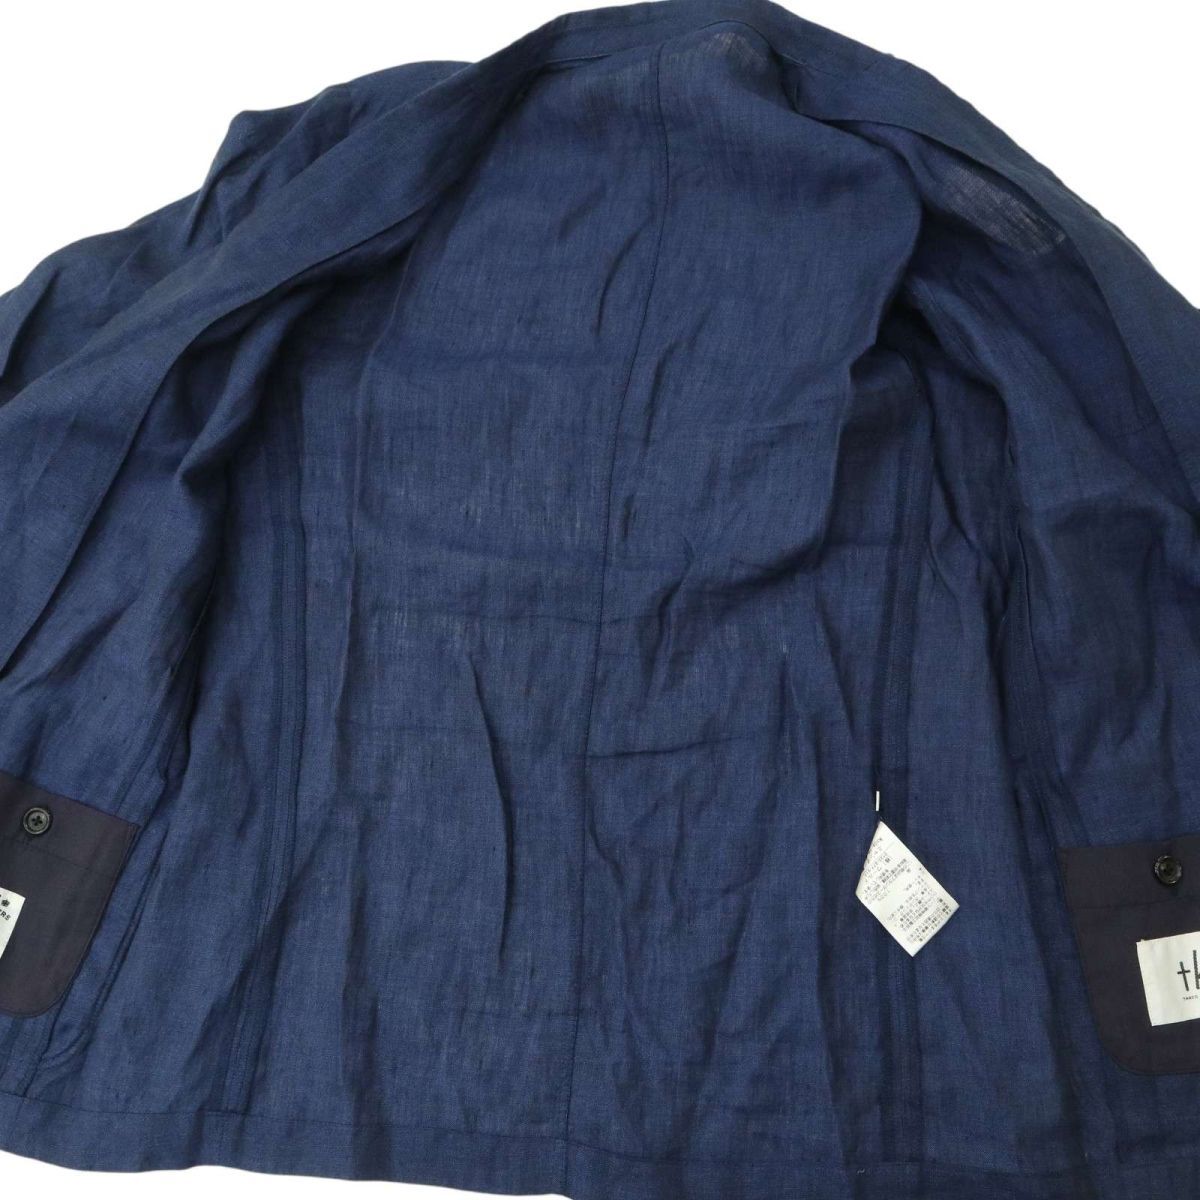 TK Takeo Kikuchi весна лето лен 100% franc дюжина linen* Anne темно синий tailored jacket Sz.M мужской темно-синий A4T03484_4#M